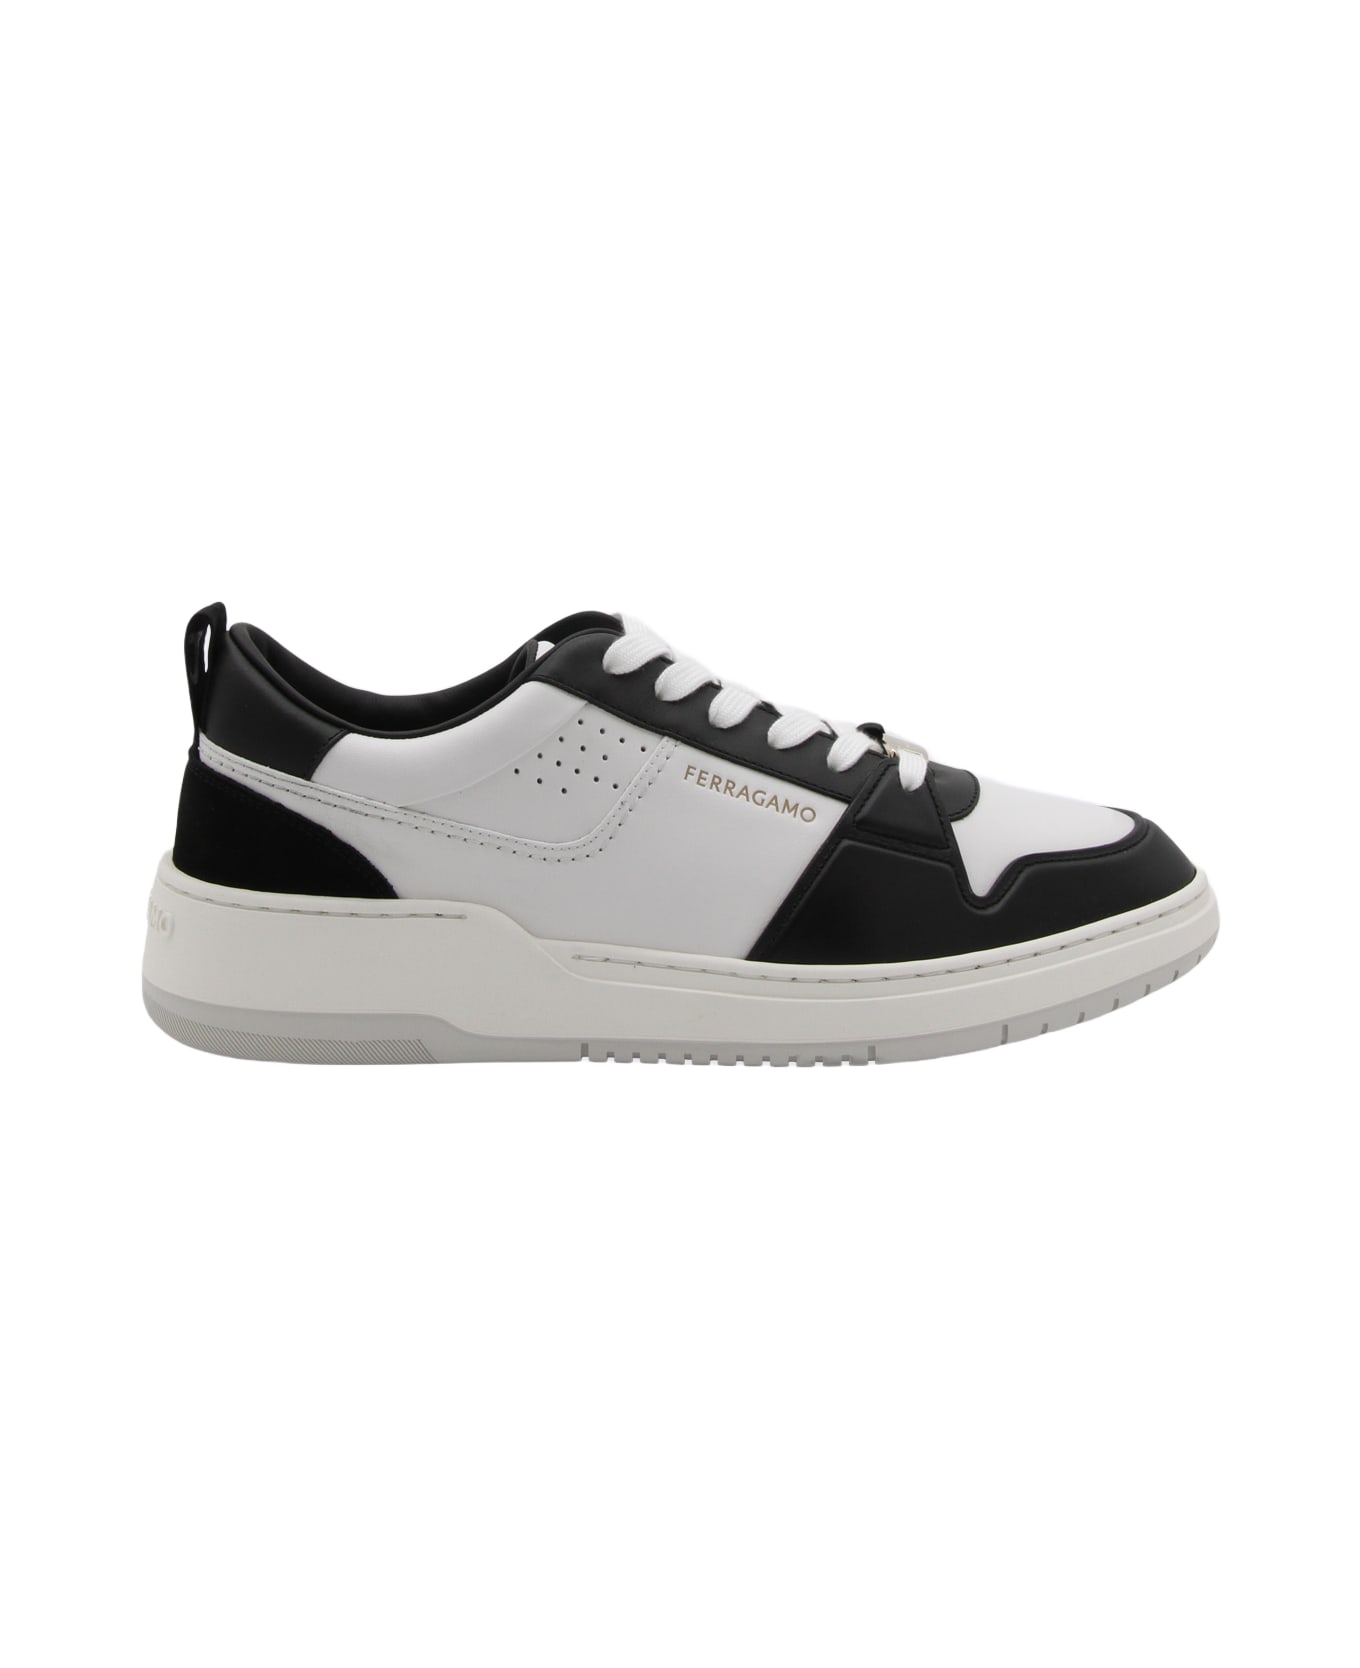 Ferragamo White And Black Leather Sneakers - White